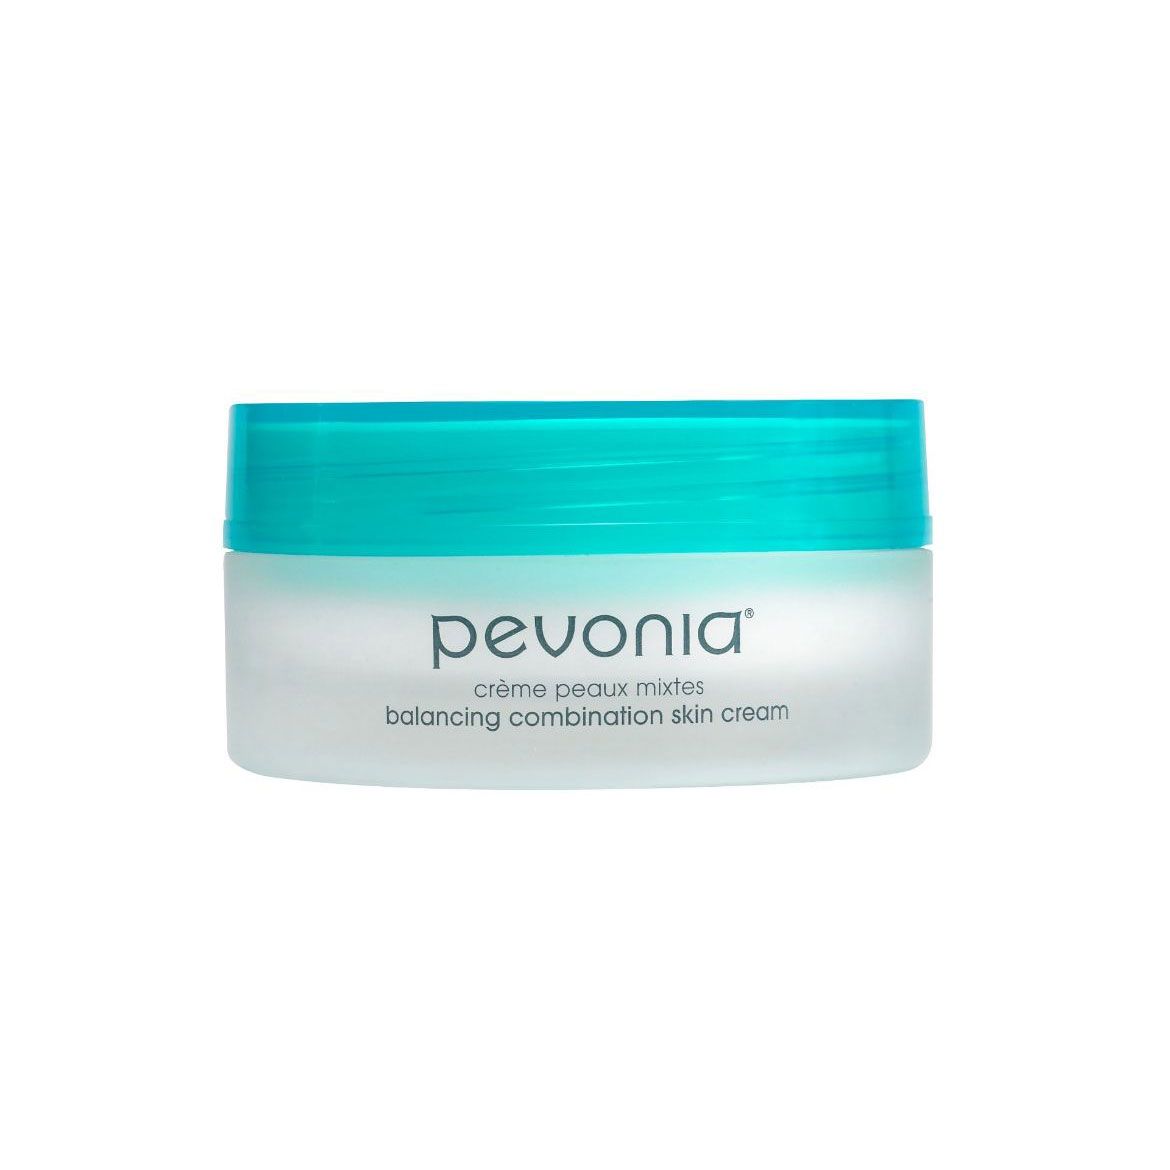 Immagine di Pevonia Balancing Combination Skin Cream (50ml)